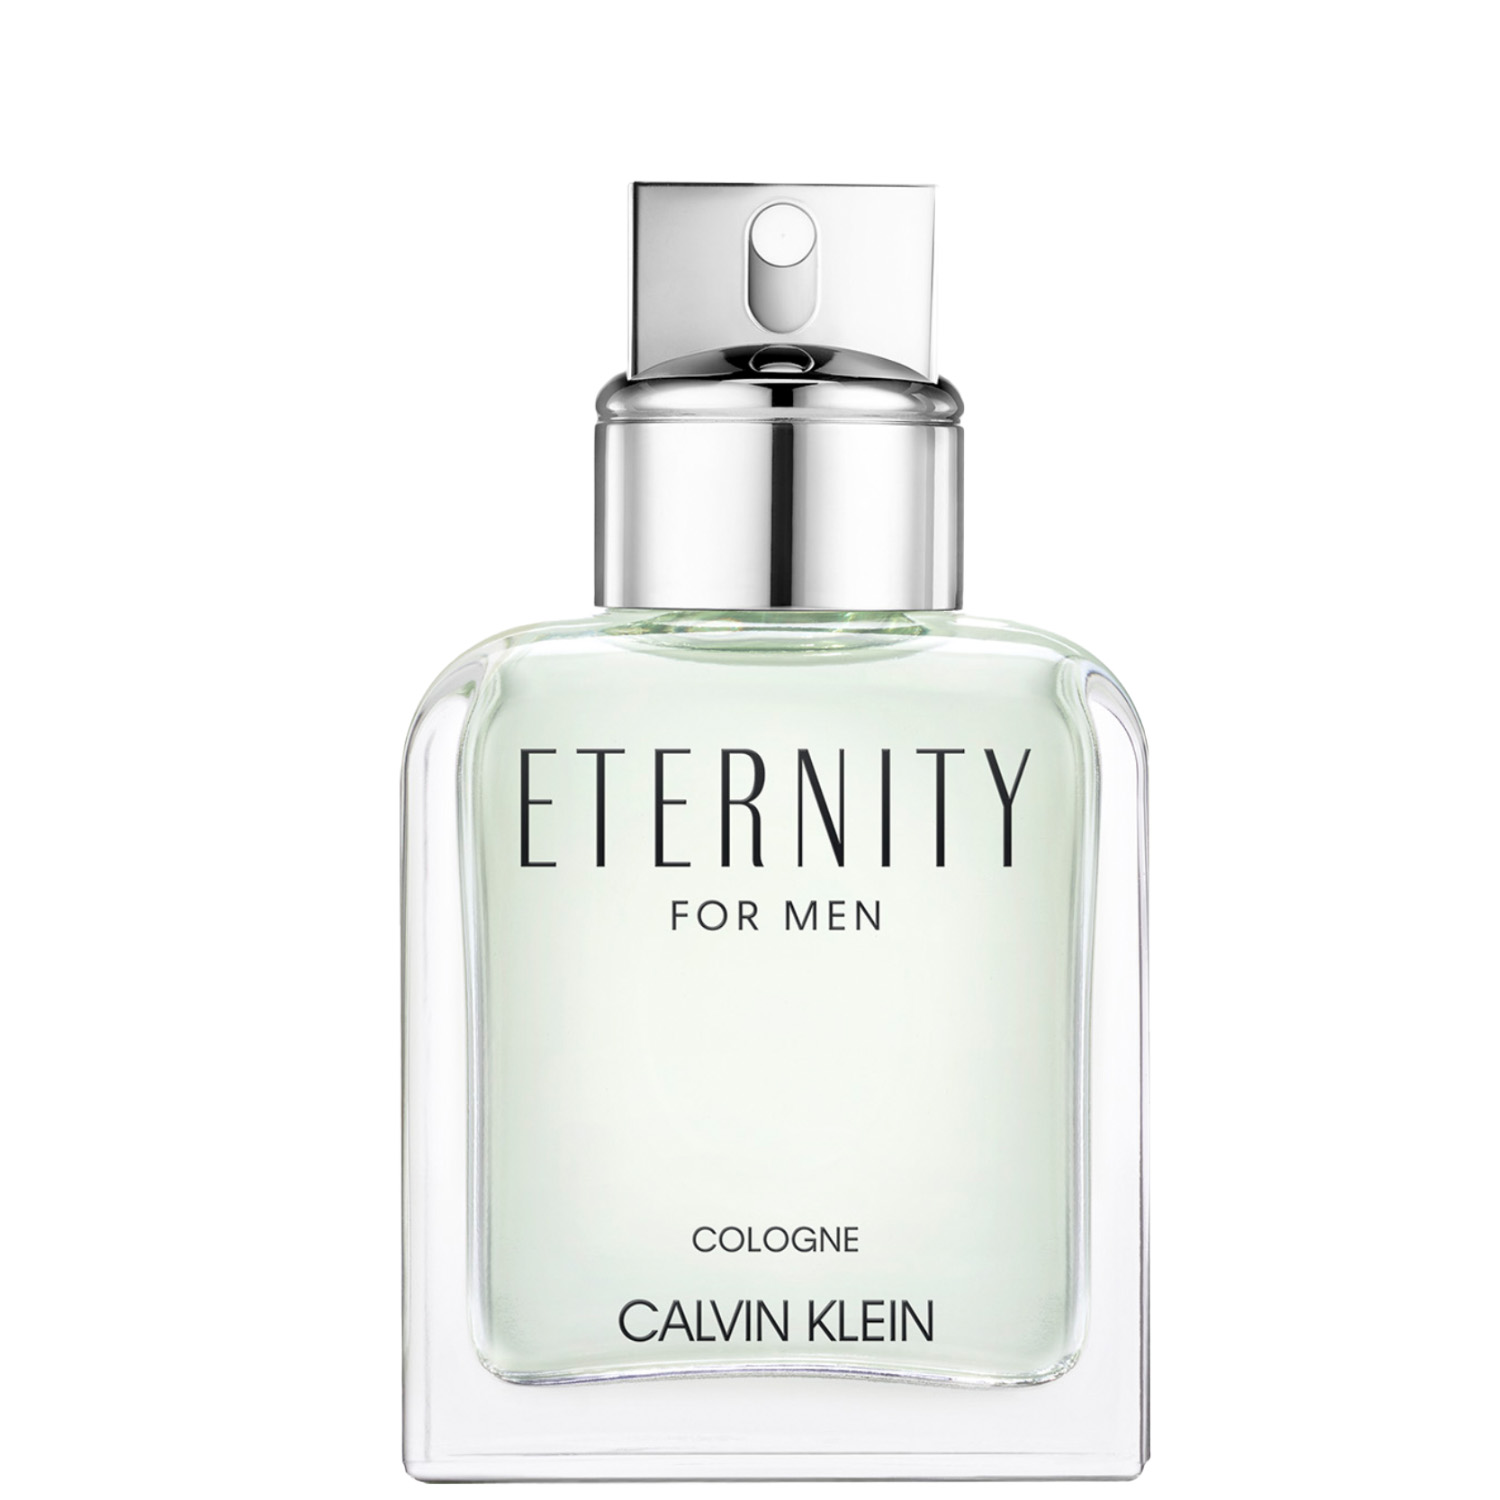 Calvin Klein Eternity for Men Cologne Eau de Toilette